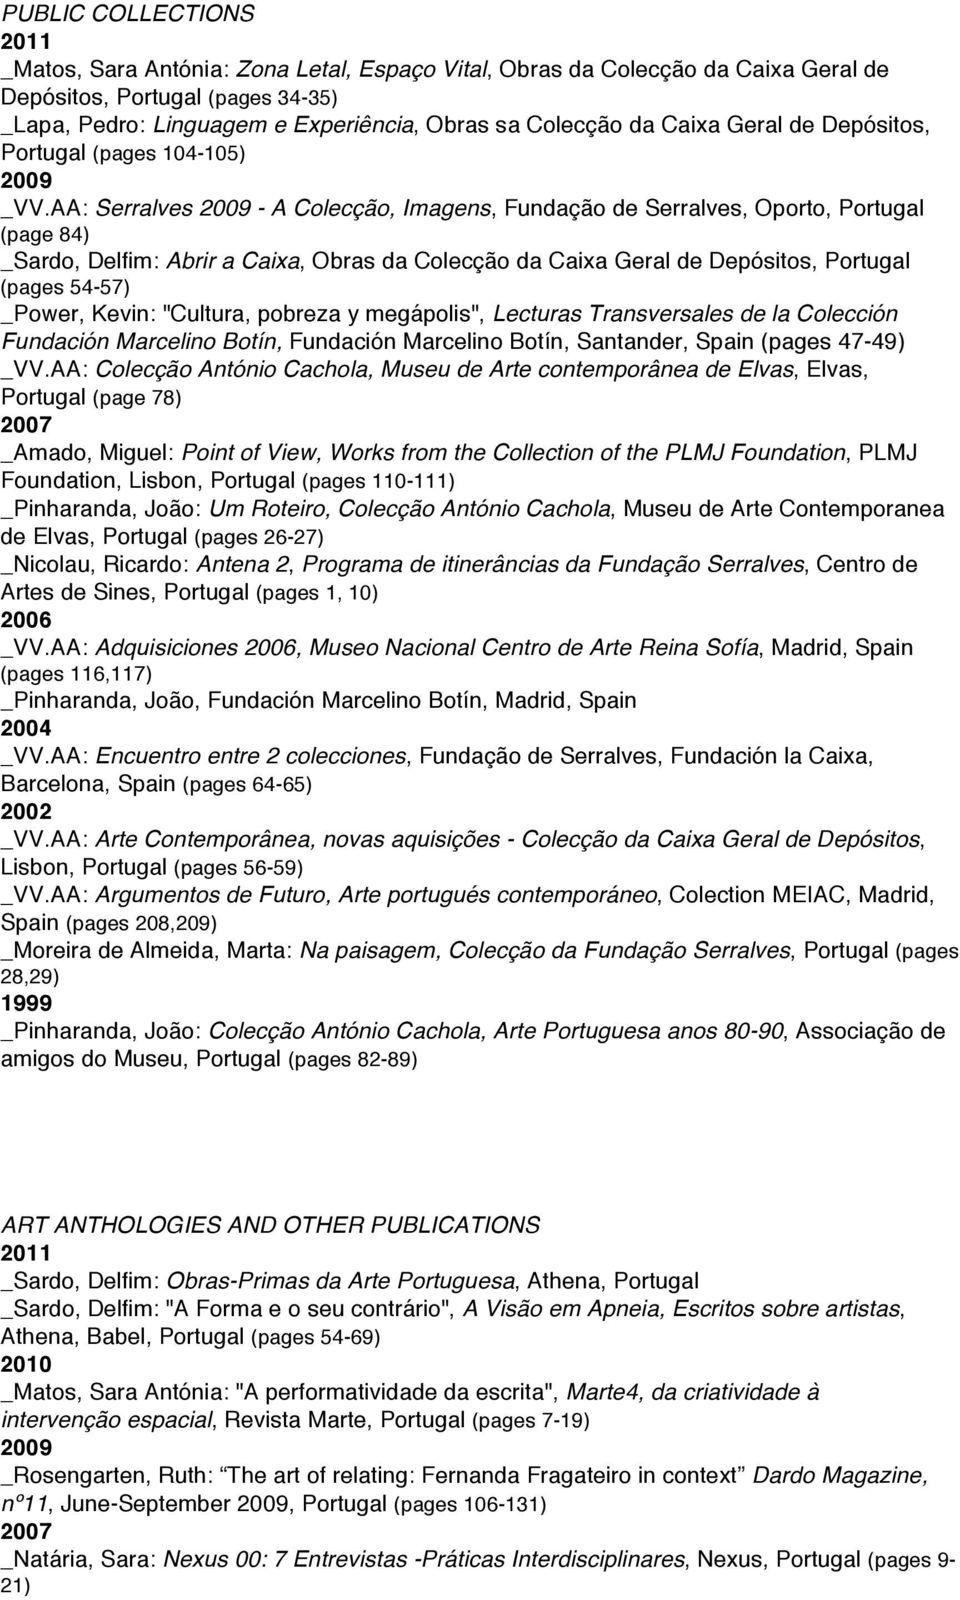 AA: Serralves - A Colecção, Imagens, Fundação de Serralves, Oporto, (page 84) _Sardo, Delfim: Abrir a Caixa, Obras da Colecção da Caixa Geral de Depósitos, (pages 54-57) _Power, Kevin: "Cultura,